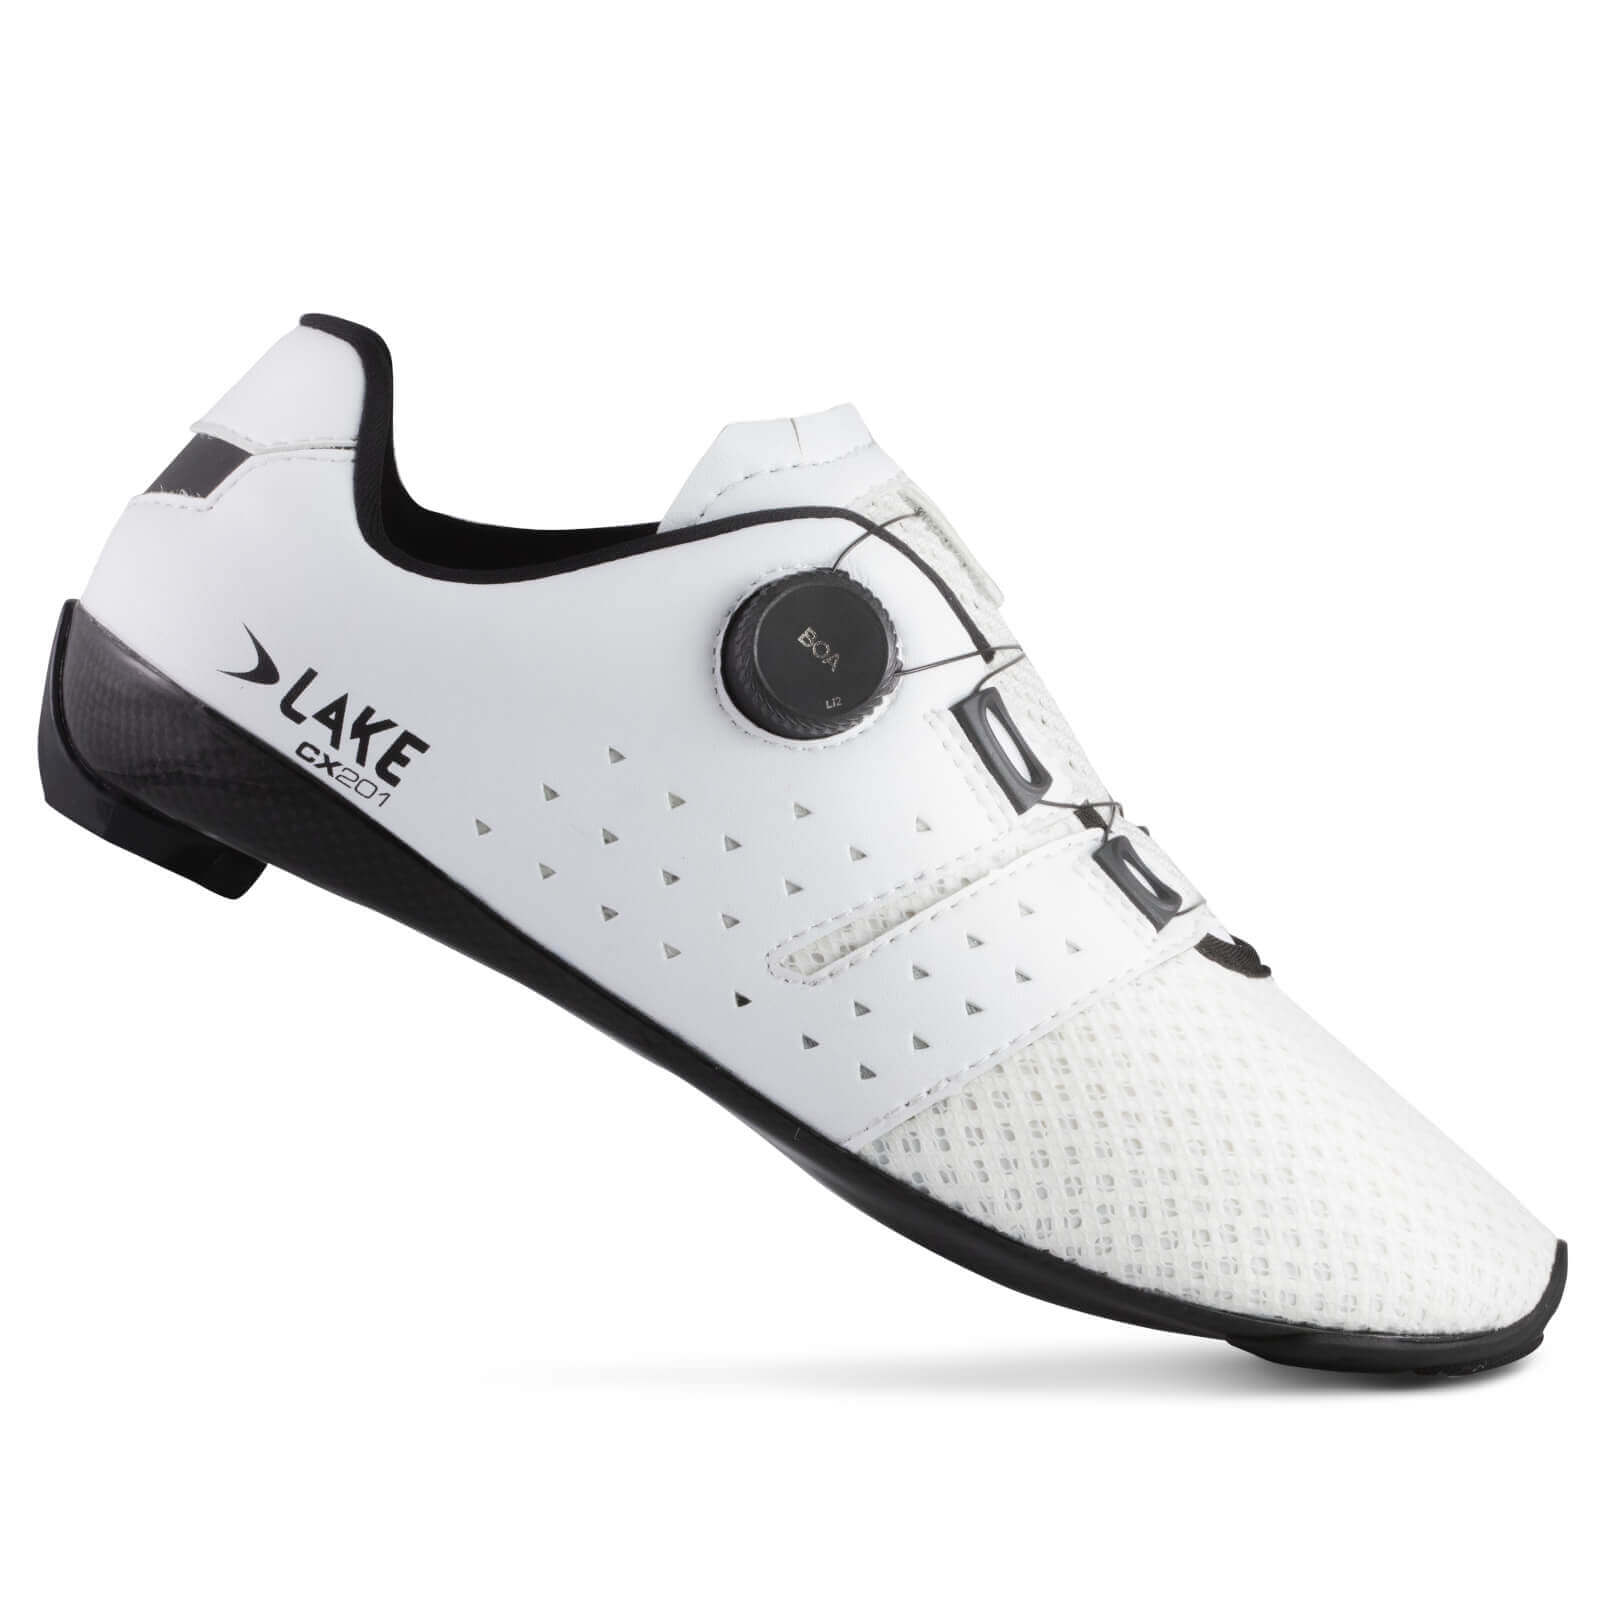 Lake CX201 Road Shoes - EU 44 - White